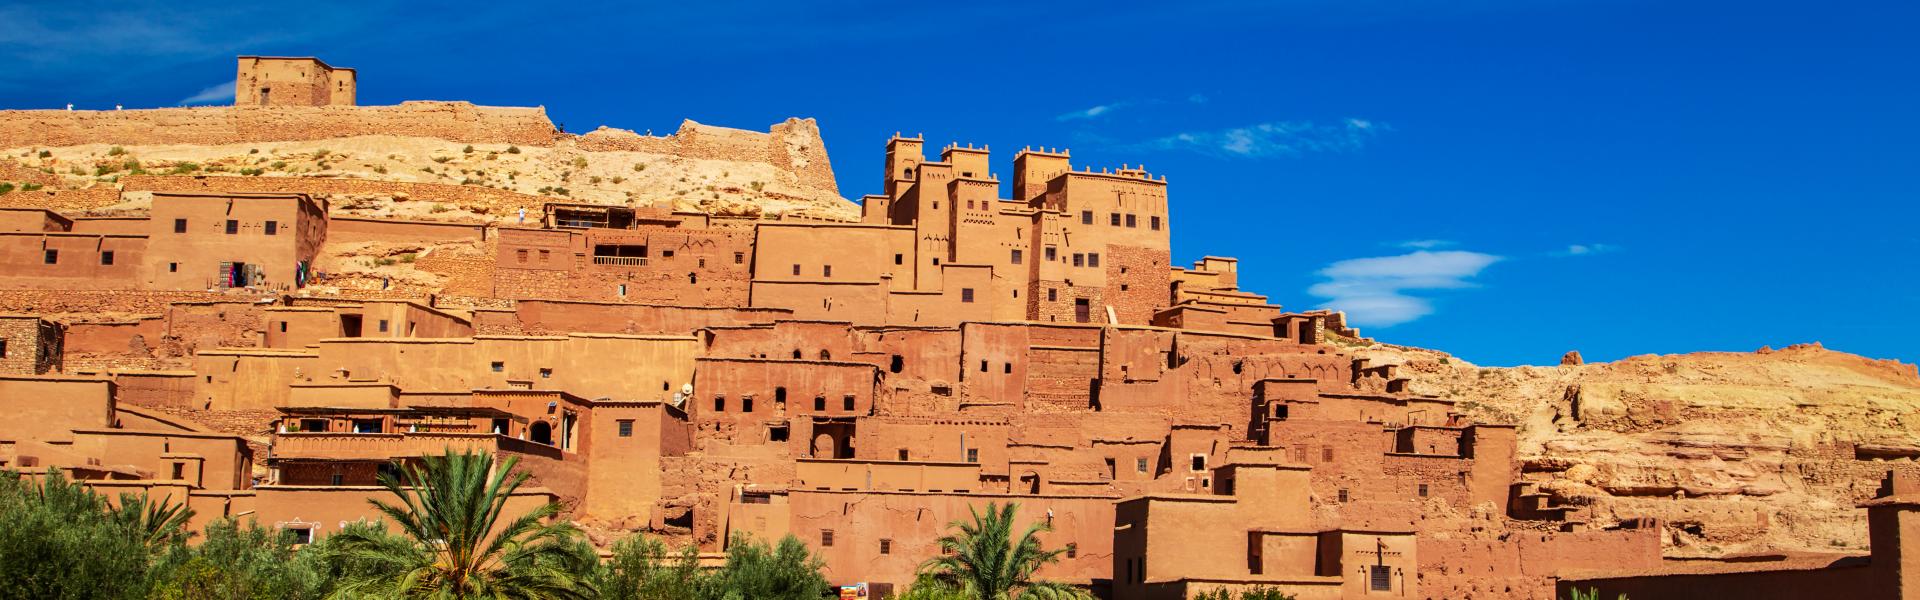 Apartamentos y alojamientos vacacionales en Marruecos - Casamundo